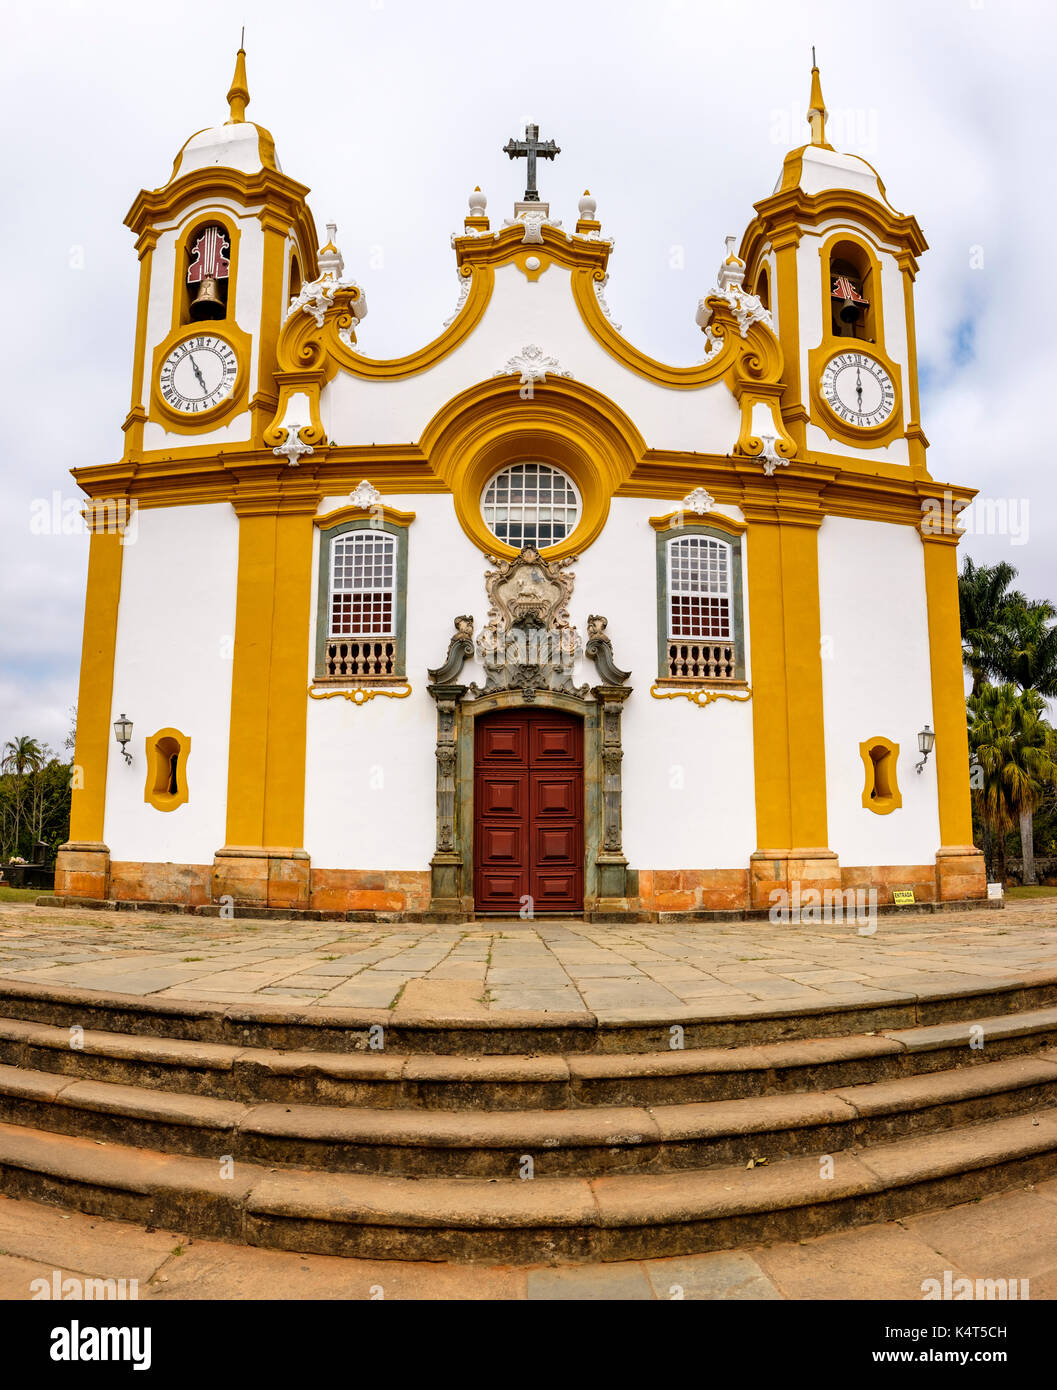 L'architecture baroque, l'église Matriz de Santo Antonio, le plus ancien et le principal temple catholique de Tiradentes, Minas Gerais, Brésil. Banque D'Images